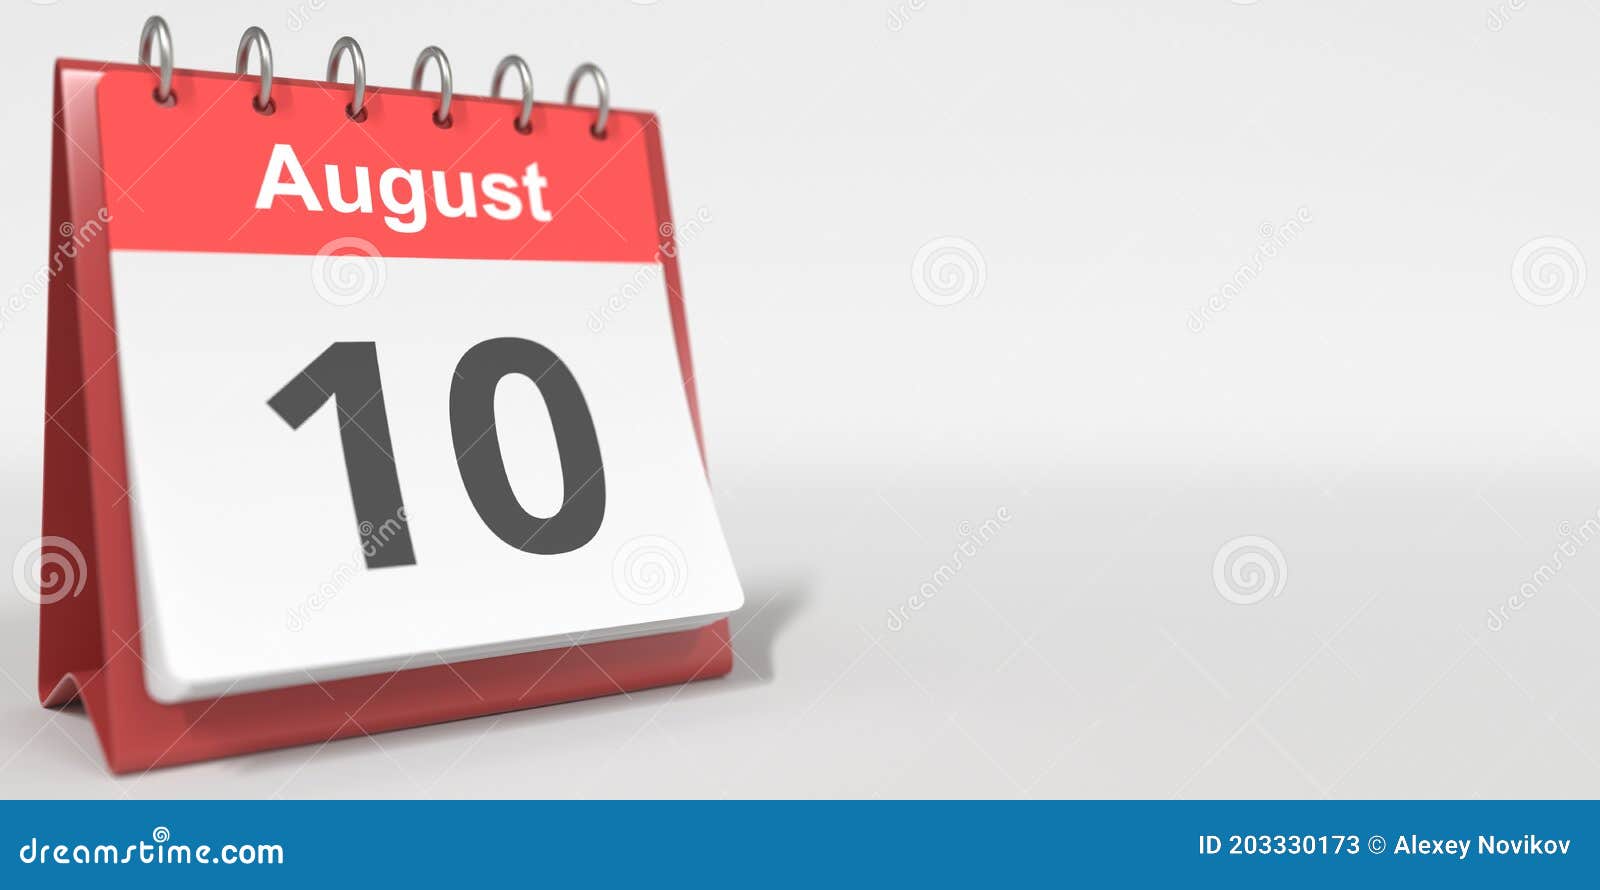 August 10 Date Written in German on the Flip Calendar Page. 3d ...